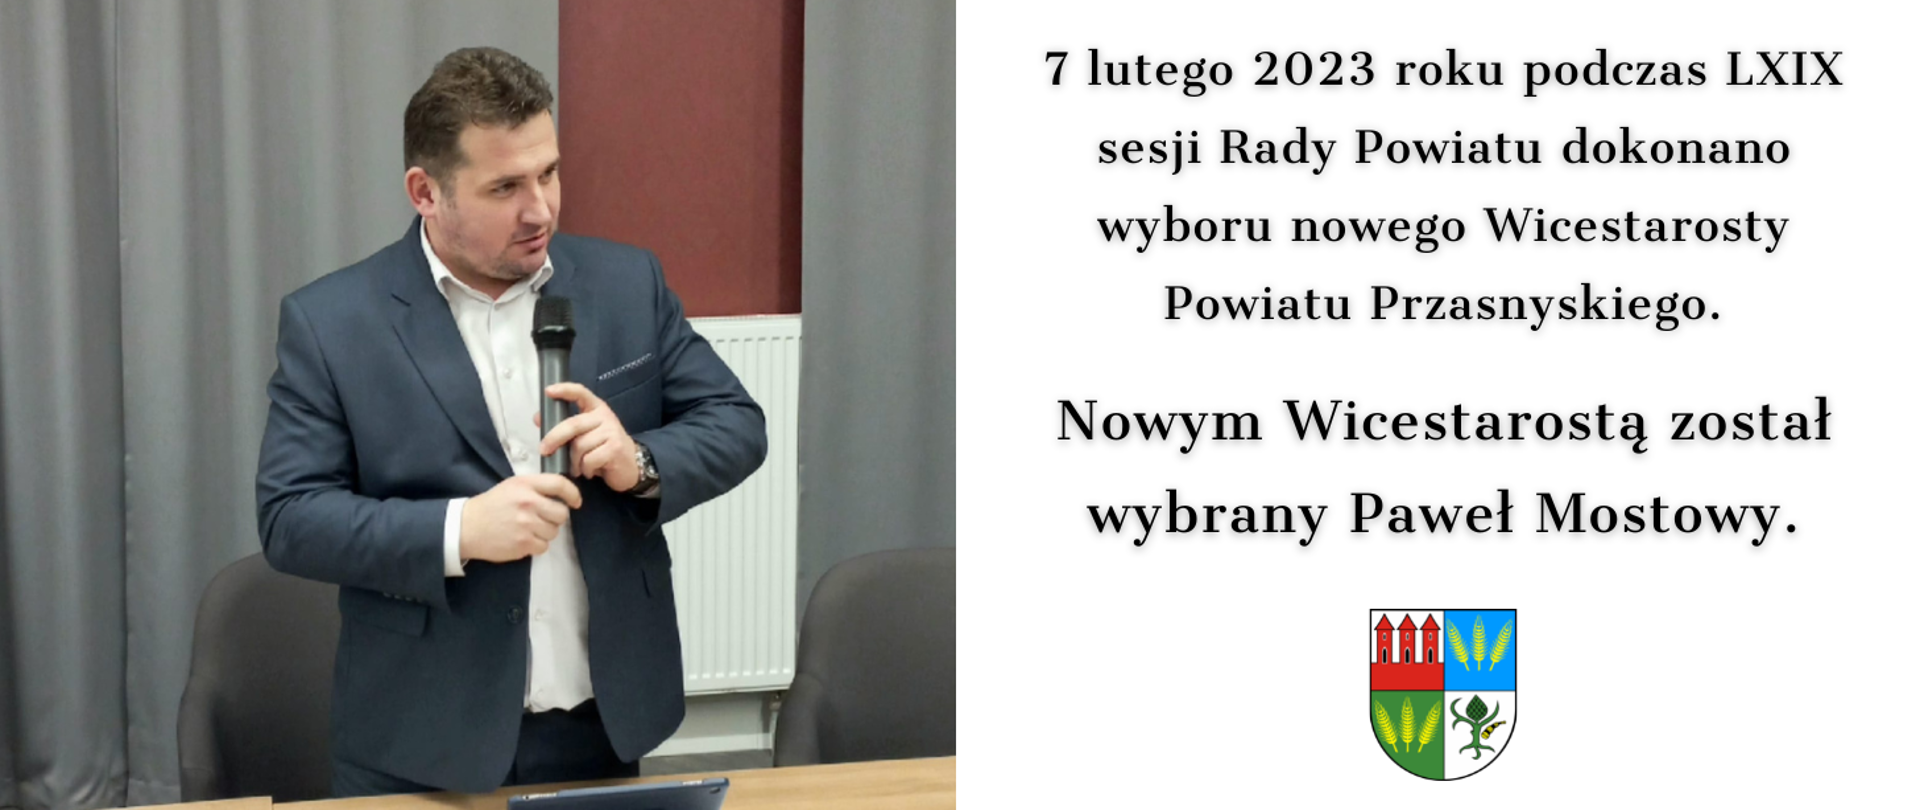 Grafika informująca o wyborze Pawła Mostowego na funkcję Wicestarosty Powiatu Przasnyskiego